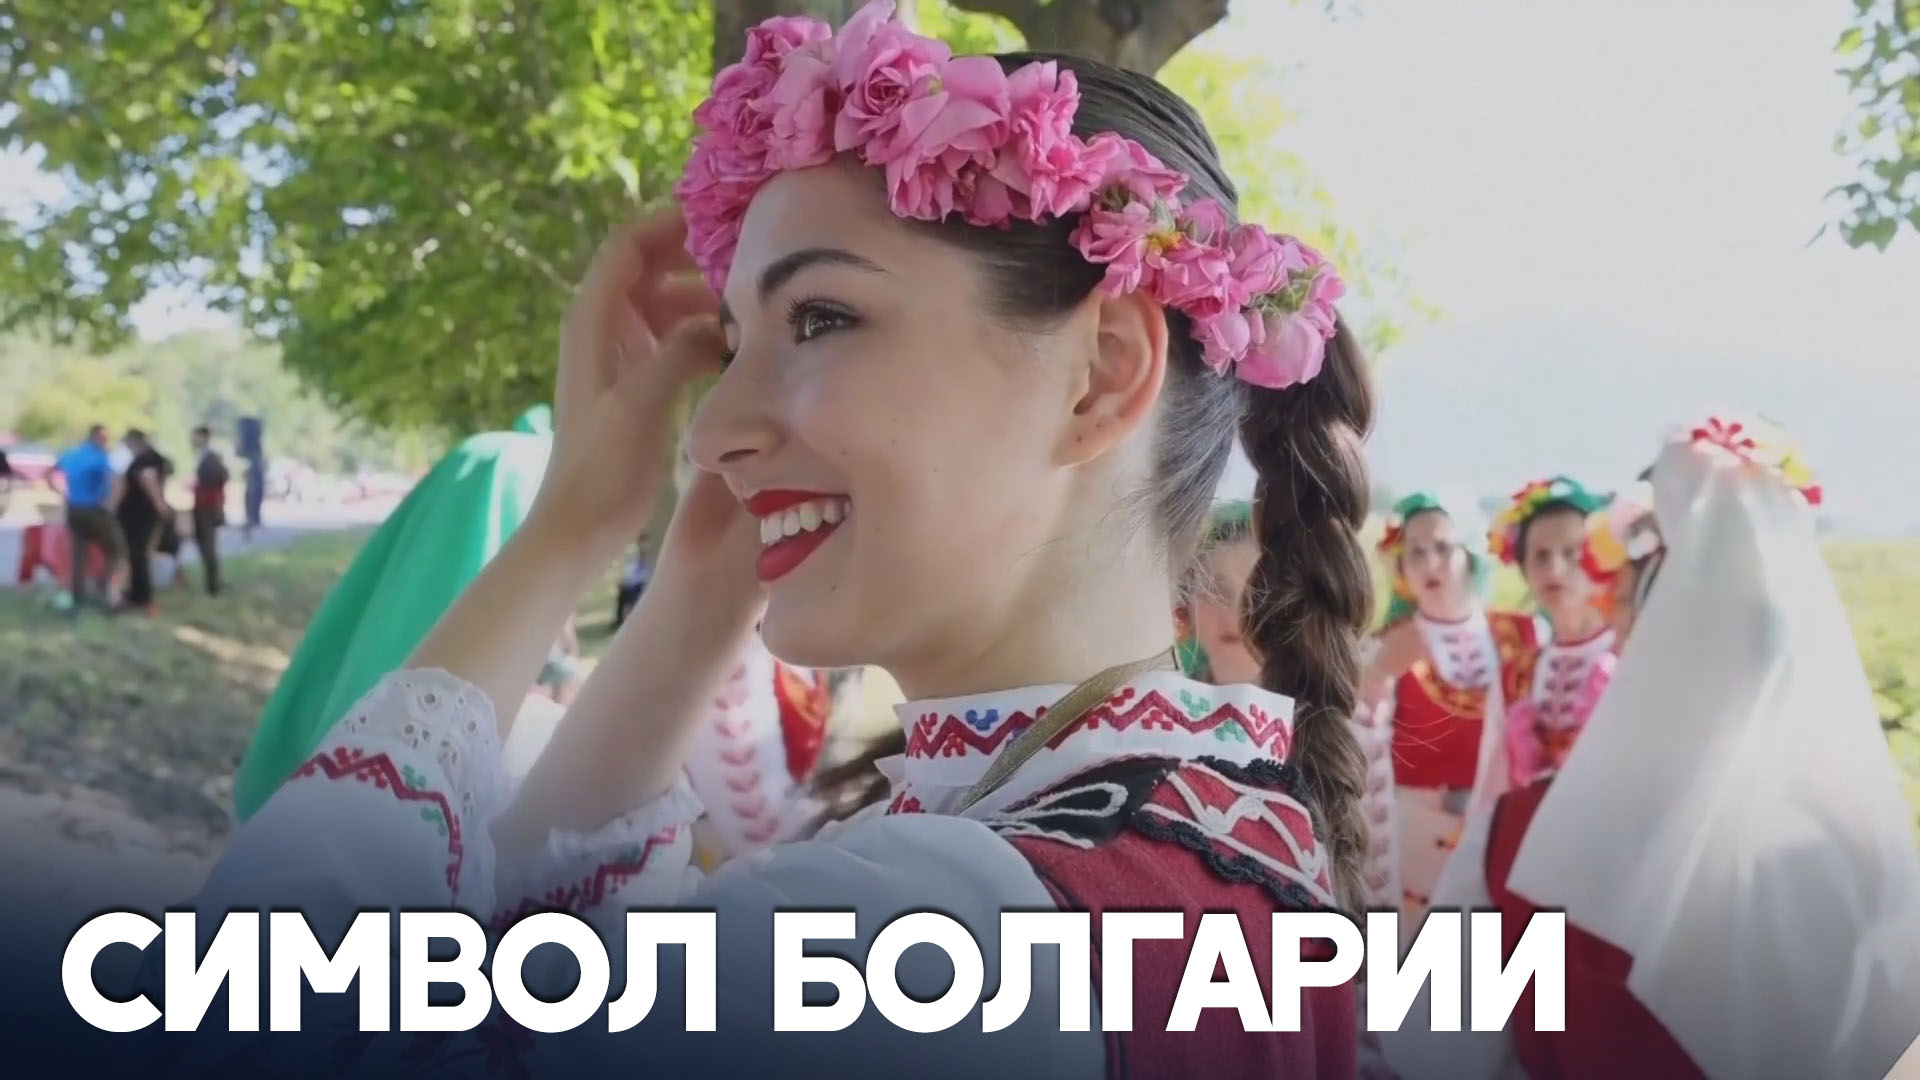 В Болгарии с размахом отмечают Праздник розы